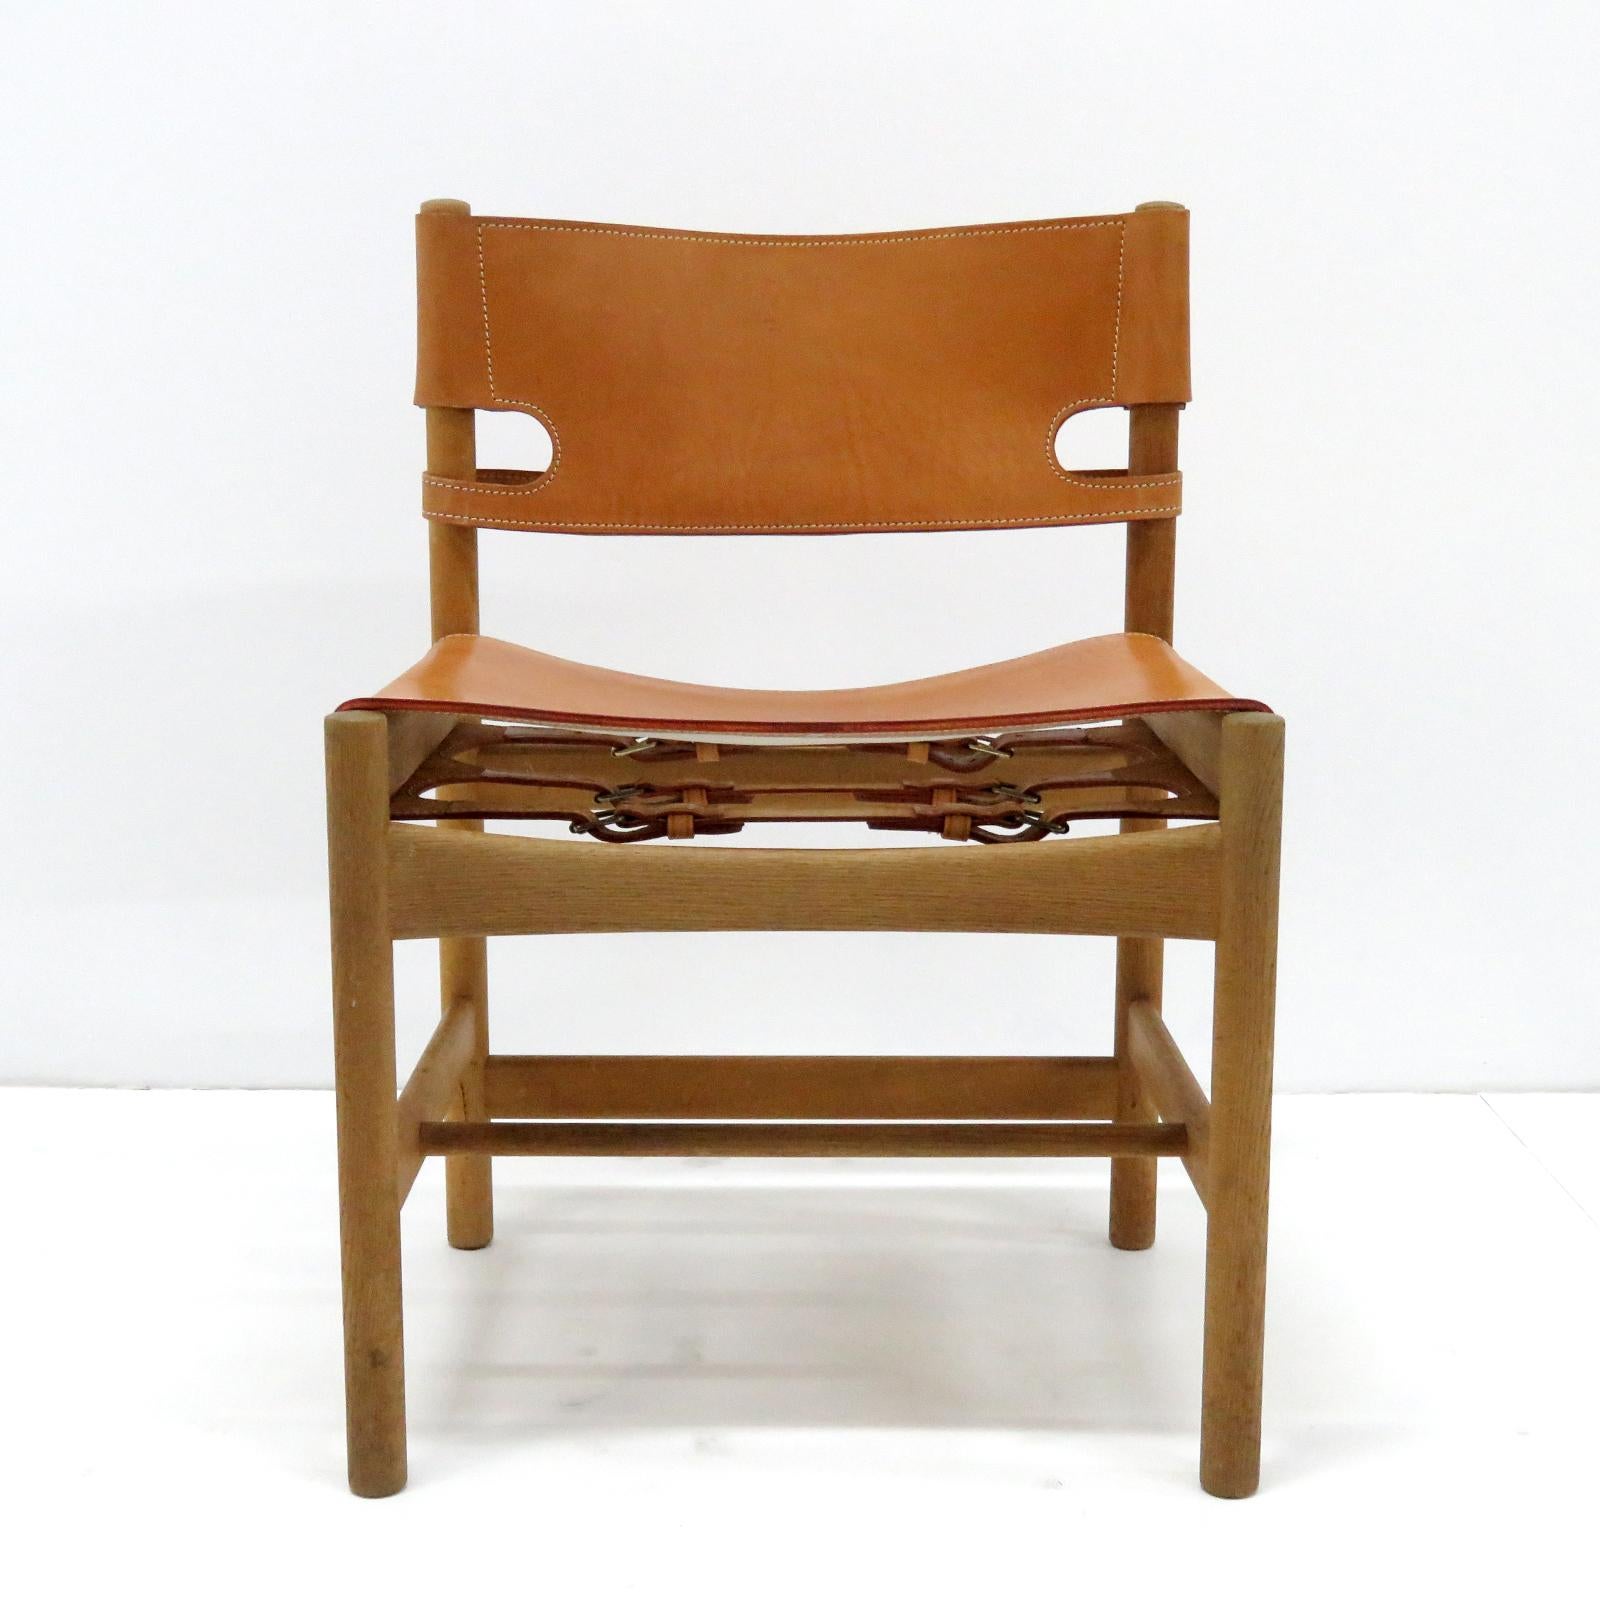 Wunderschöner Satz von sechs Børge Mogensen 'Hunting' Stühlen, Modell Nr. 3237 für Fredericia Furniture, mit Sattelleder auf Eichenrahmen, tolle Patina.